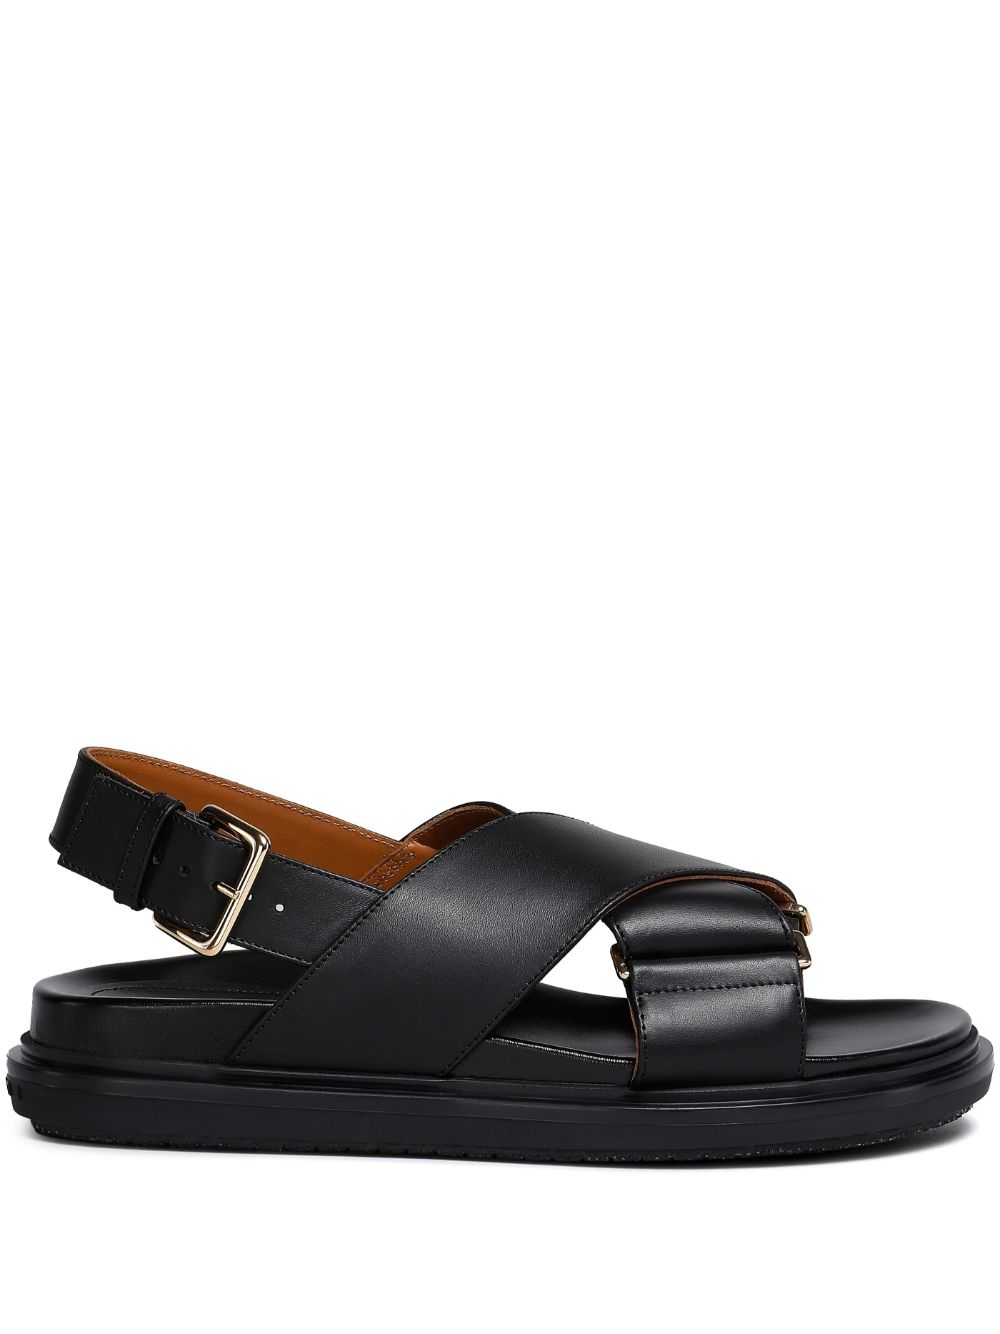 Marni Fussbet leather sandals - Black von Marni